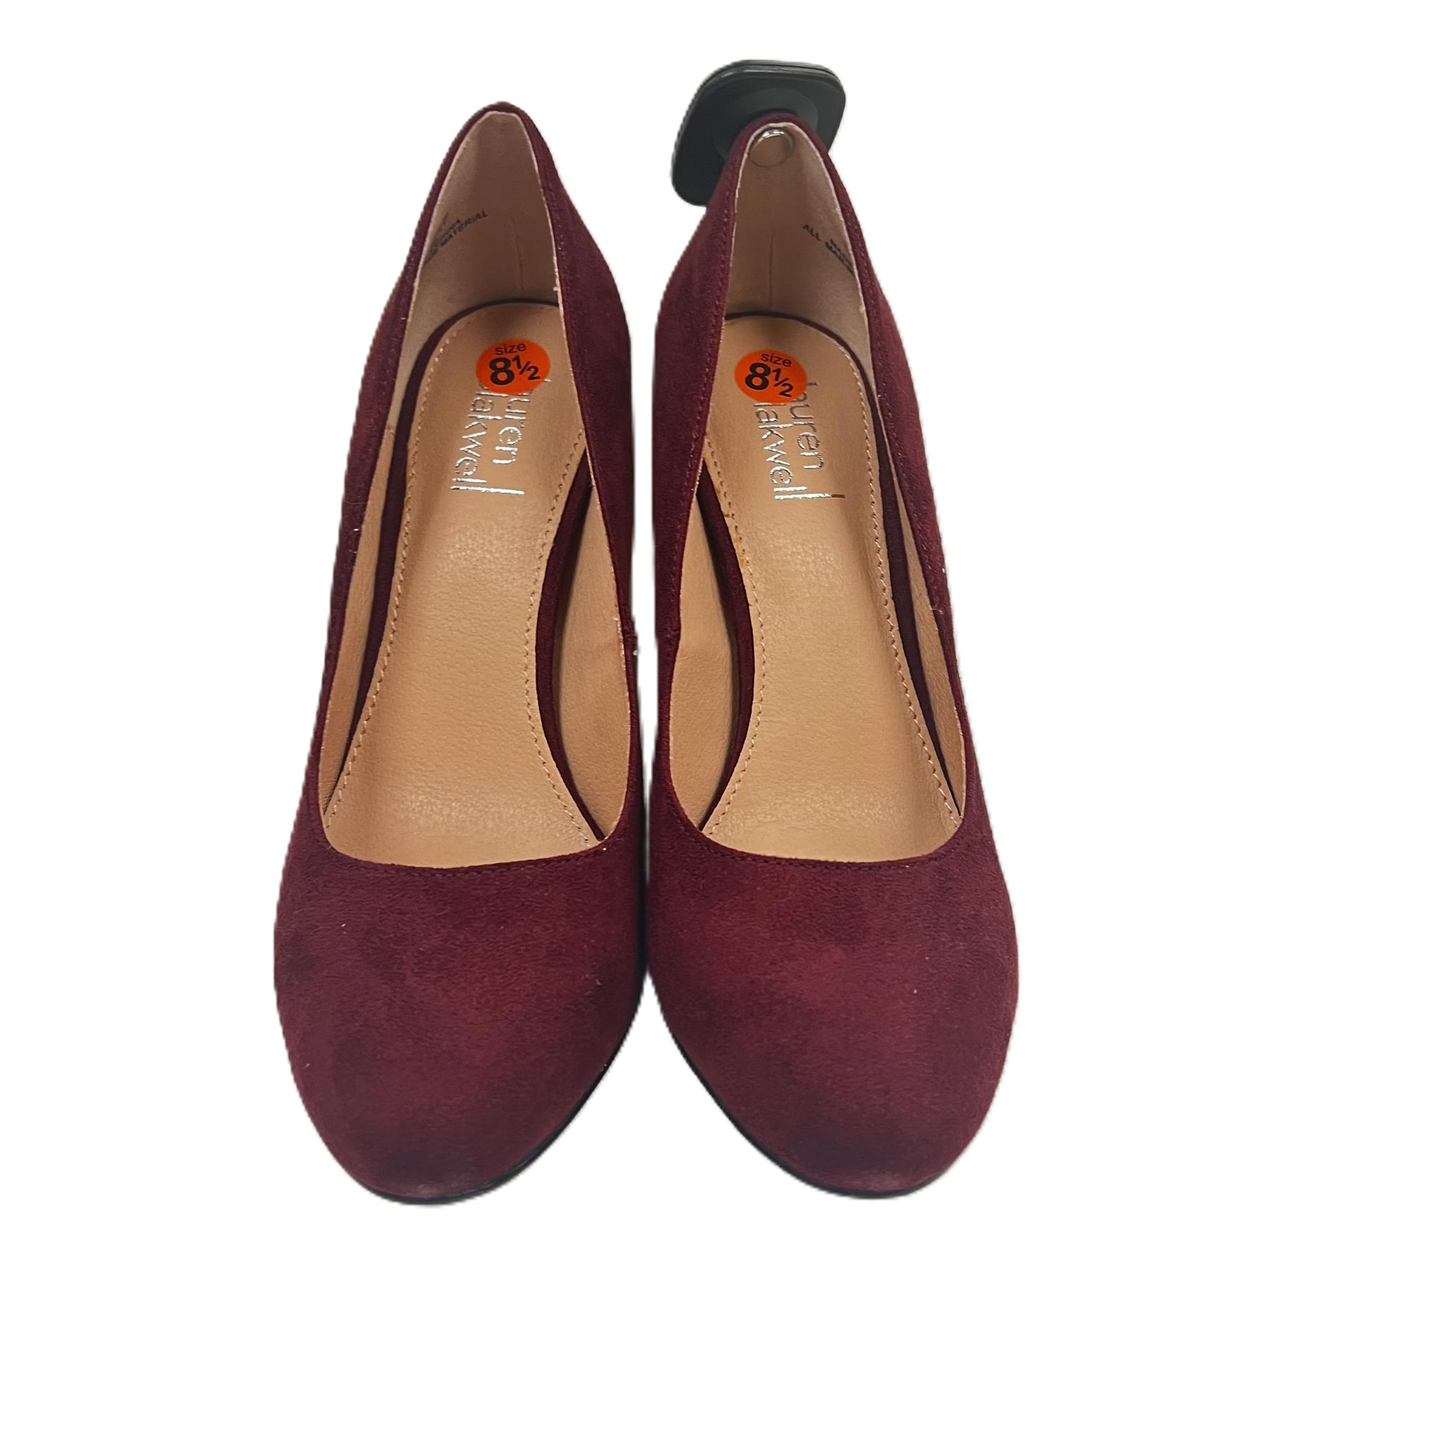 Shoes Heels Stiletto By LAUREN BLAKWELL  Size: 8.5